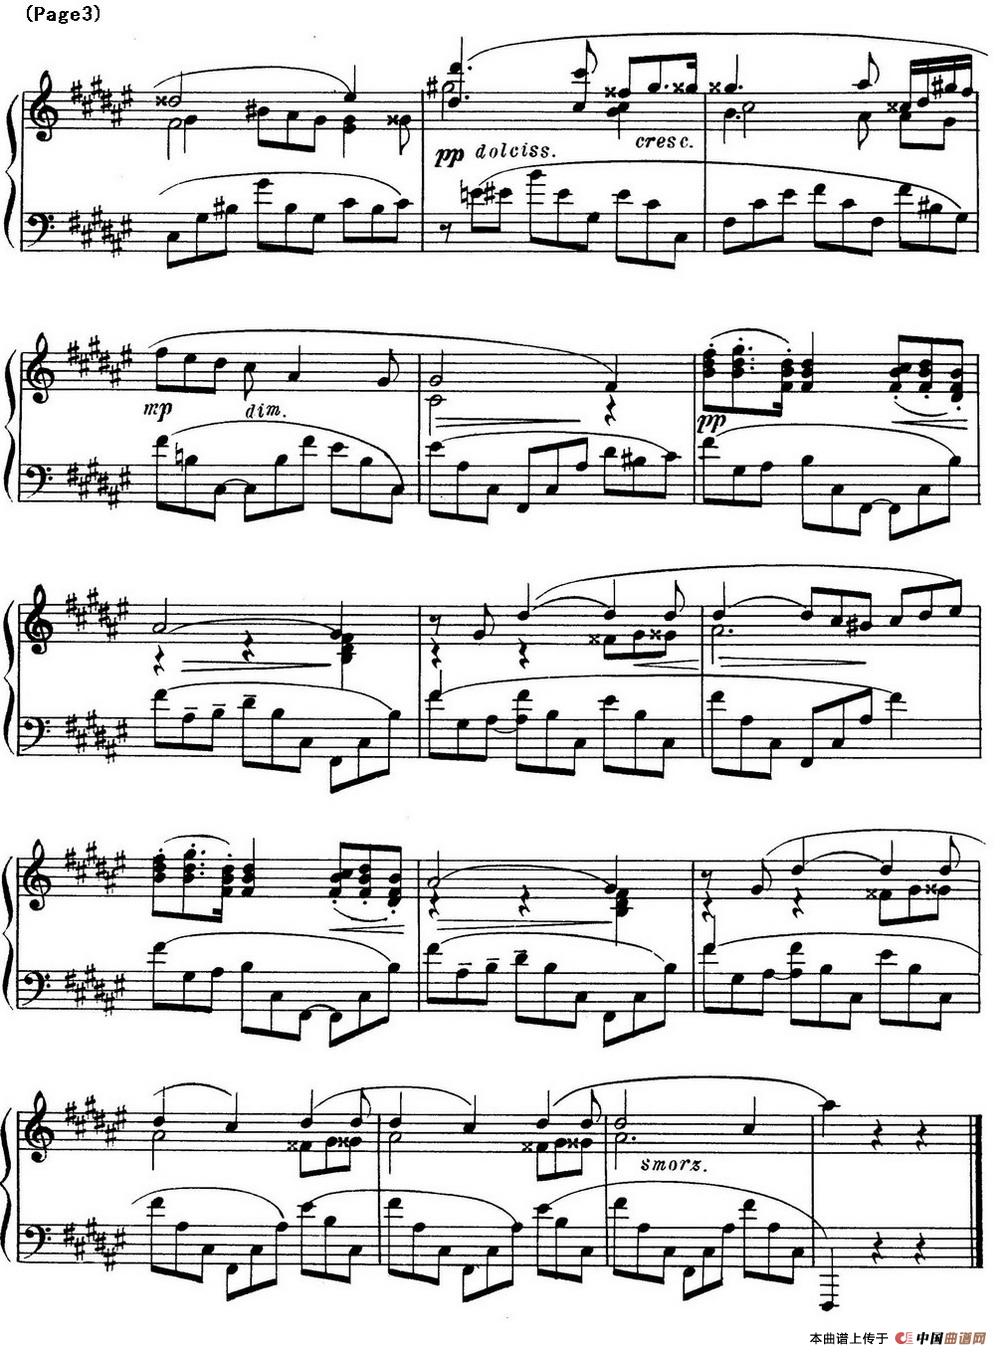 斯克里亚宾8首钢琴练习曲 Op42（No.4 Alexander Scriabin Etudes）(1)_Scriabin Etude Op.42 No.4_页面_3.jpg